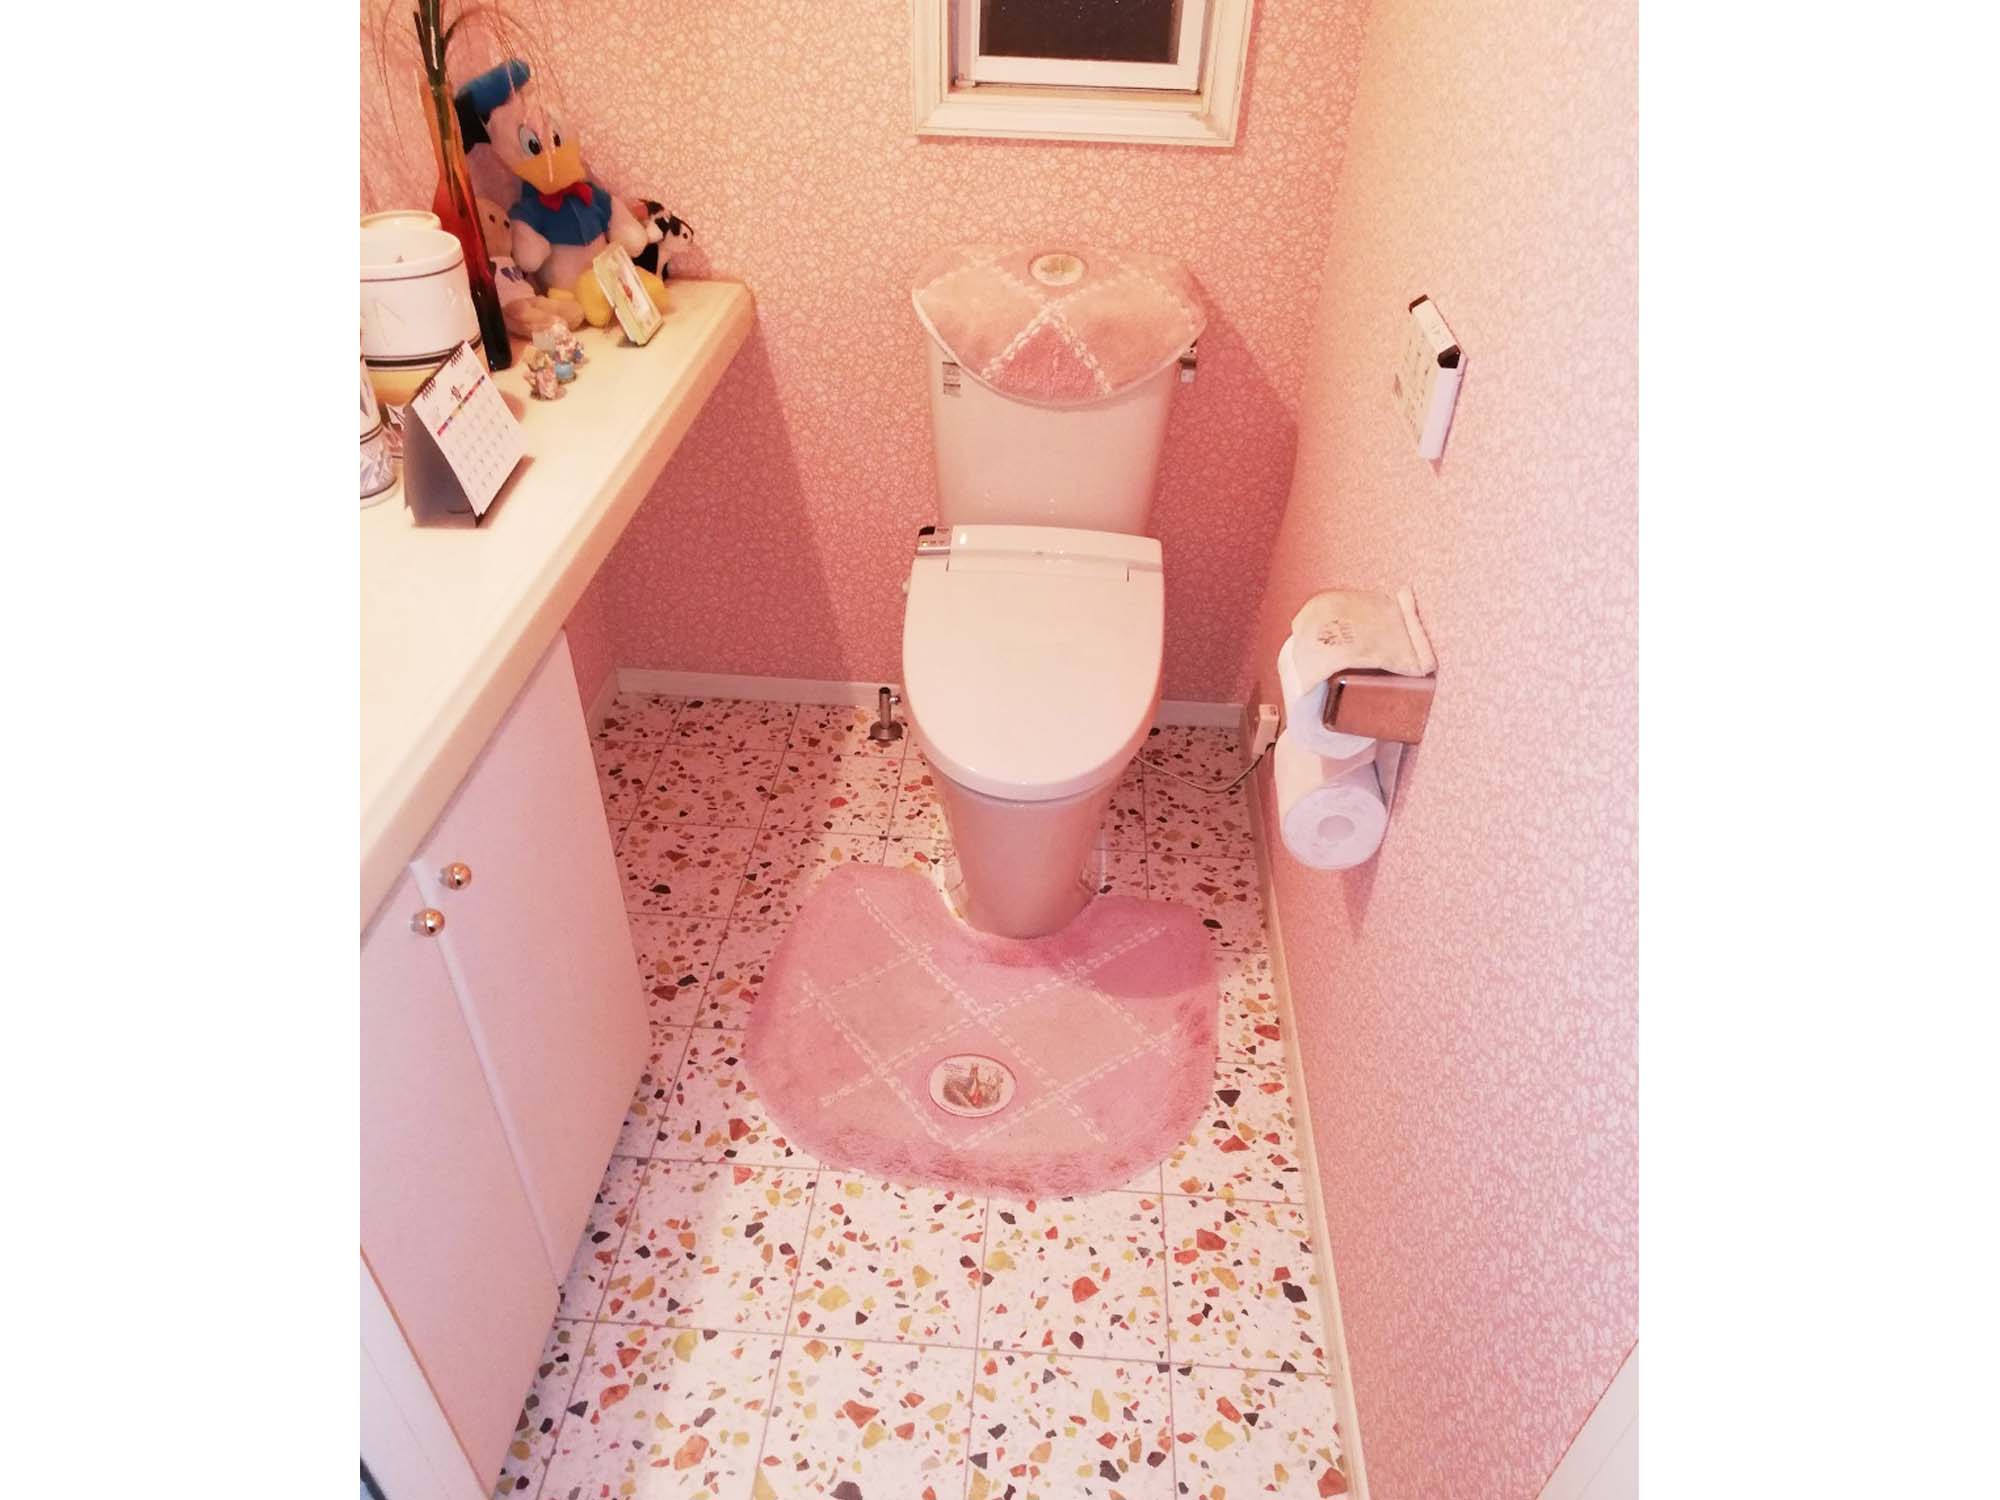 個性的な床クッションフロアで可愛らしいトイレにリフォーム 豊田市 安城市のリフォーム専門店 オケゲン